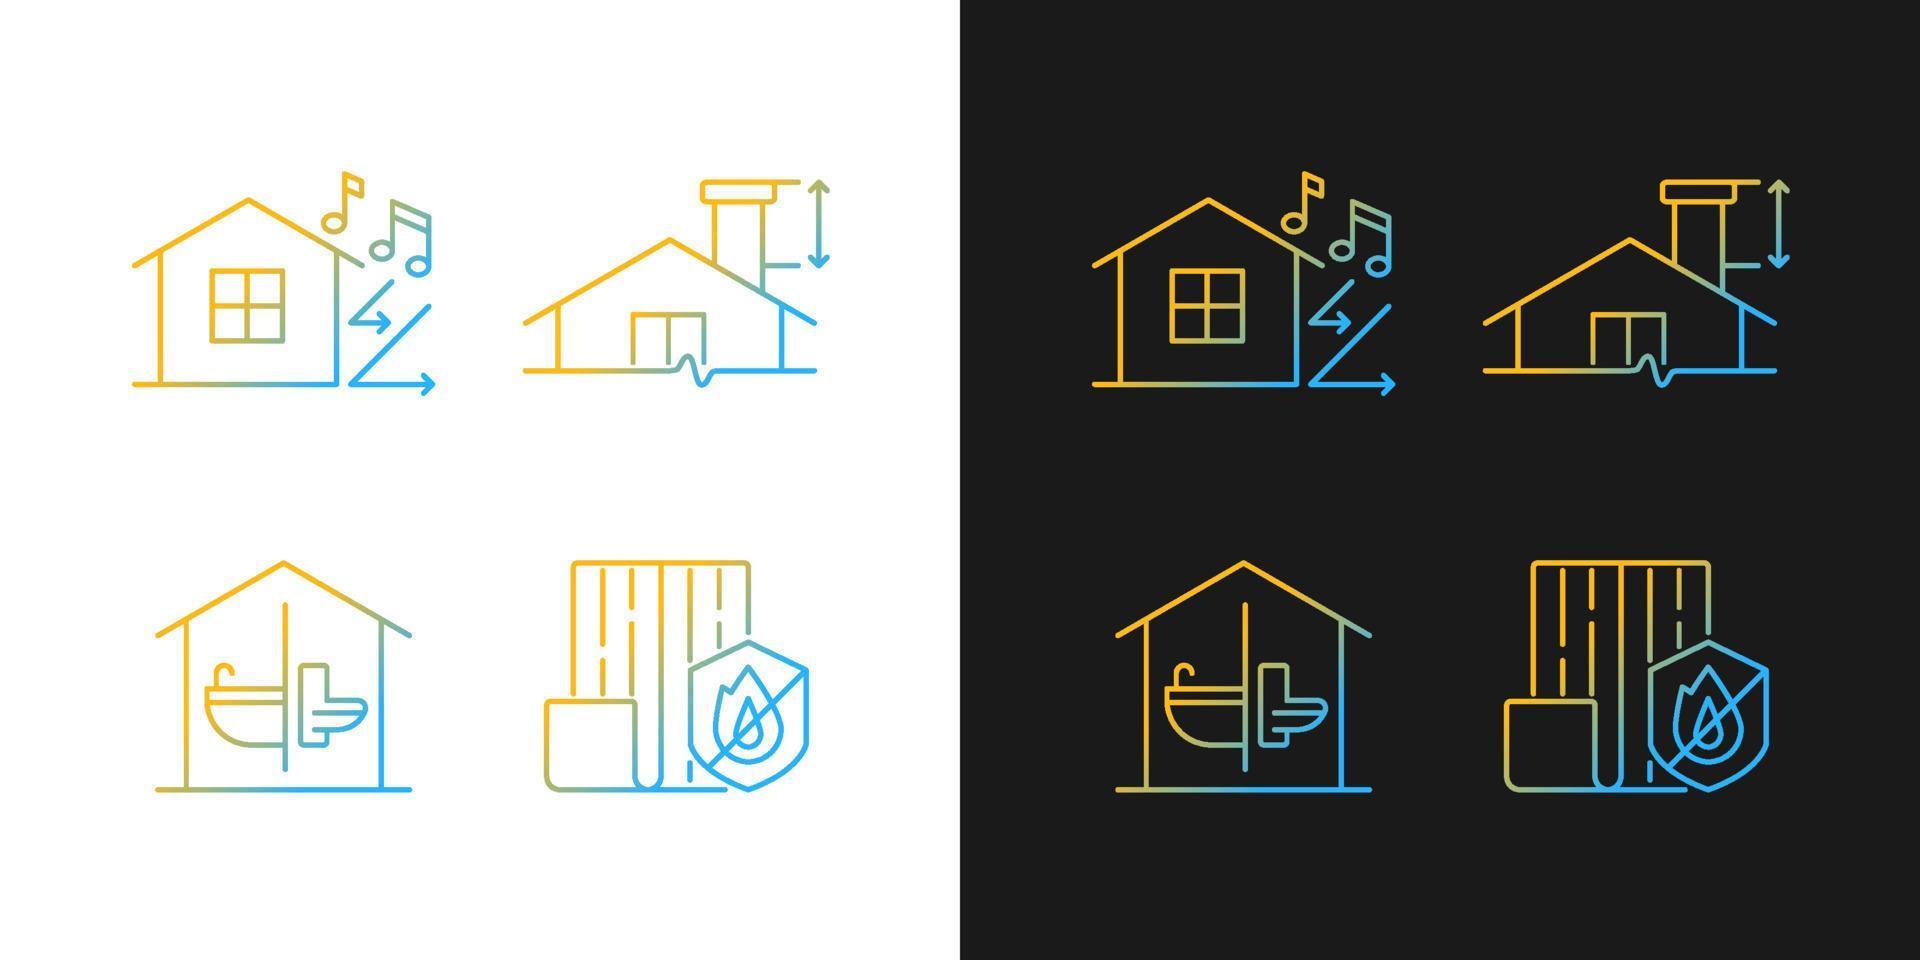 huisbouw veiligheidsverloop pictogrammen ingesteld voor donkere en lichte modus. minimale schoorsteenhoogte. dunne lijn contour symbolen bundel. geïsoleerde vector overzicht illustraties collectie op zwart-wit